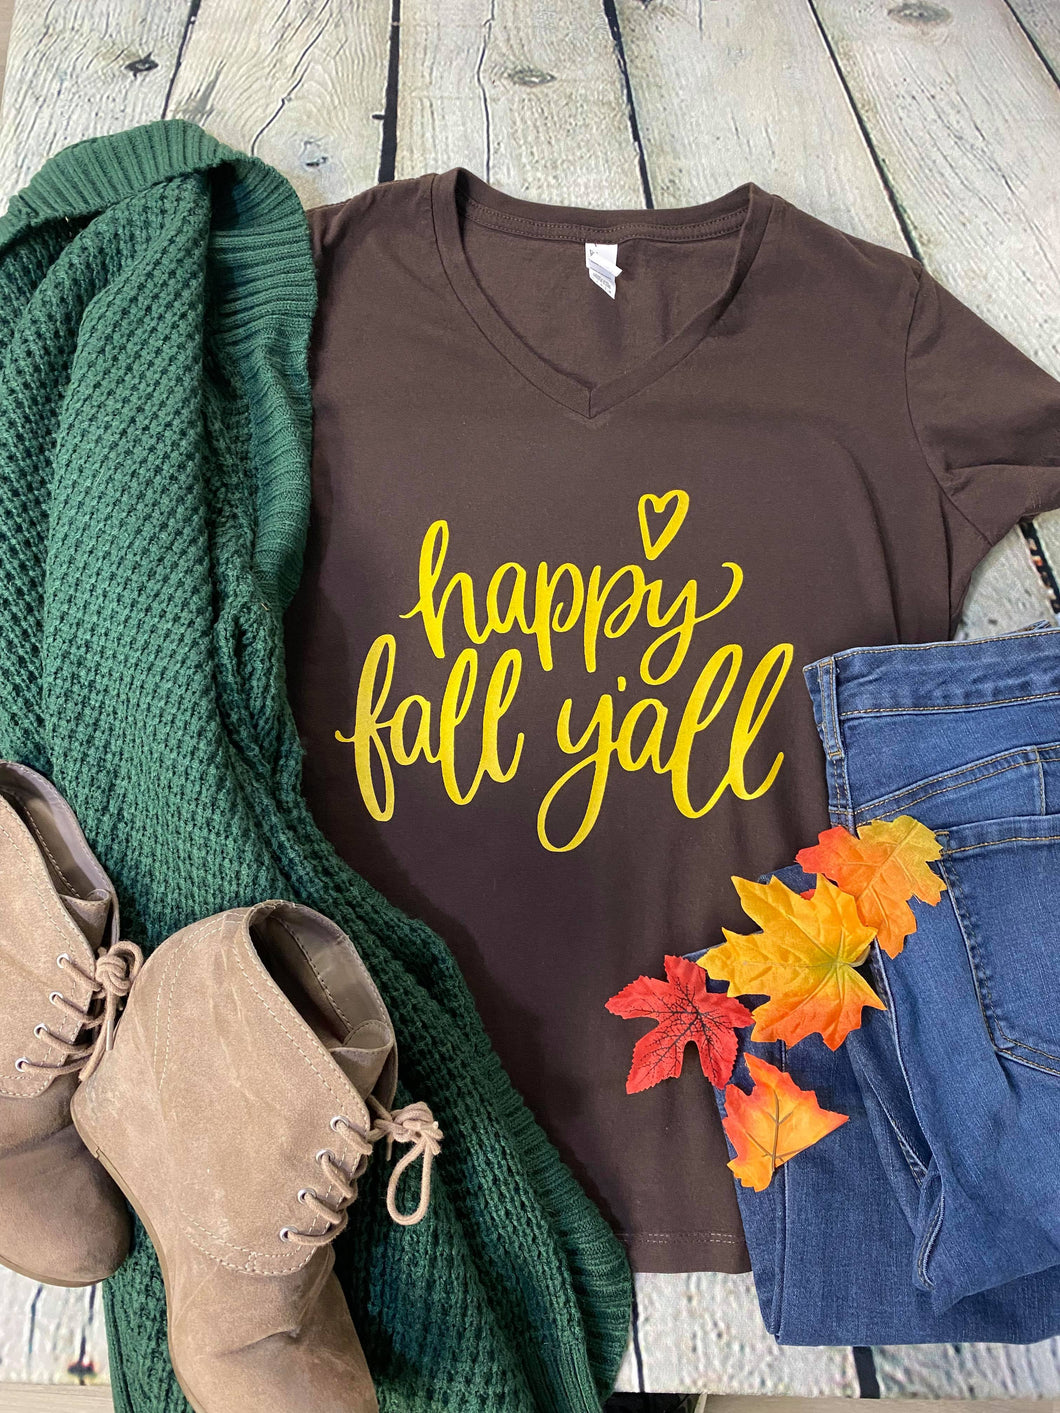 Happy Fall Y'all apparel